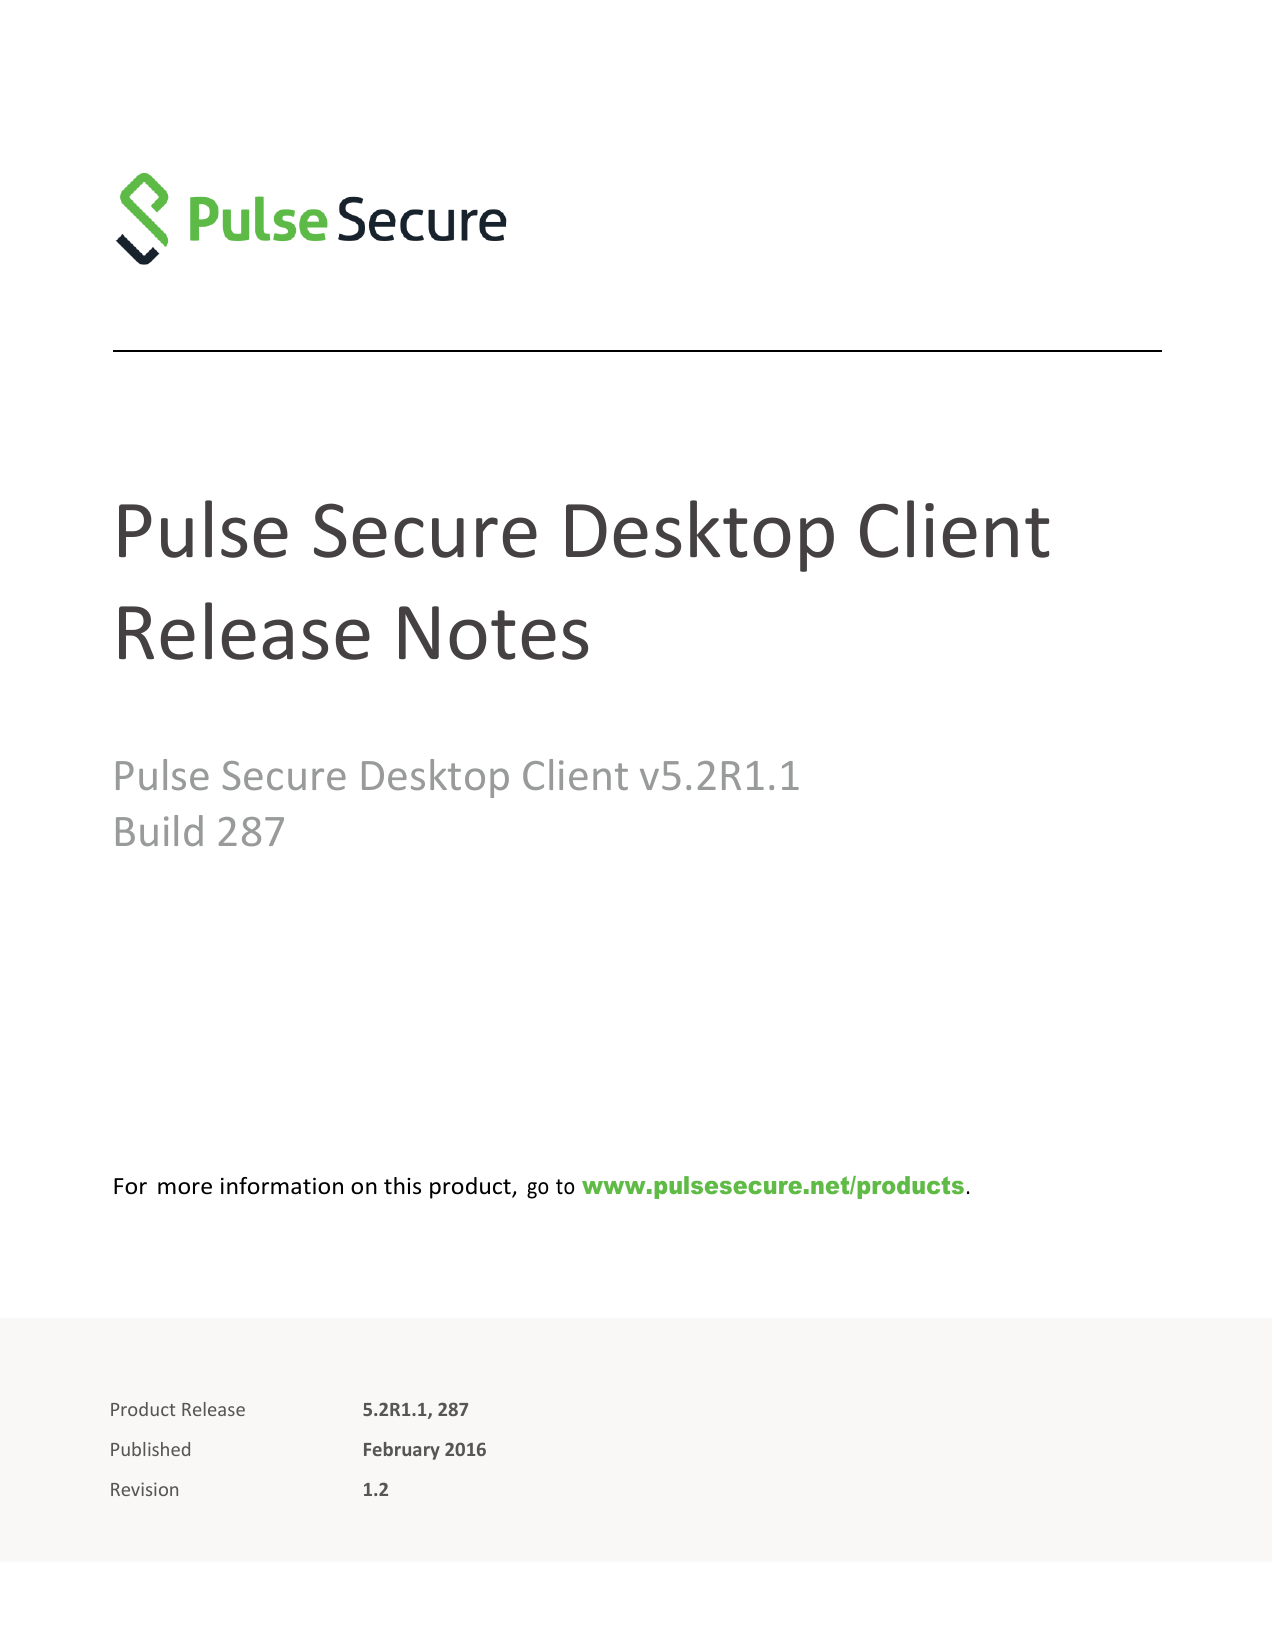 pulse secure client